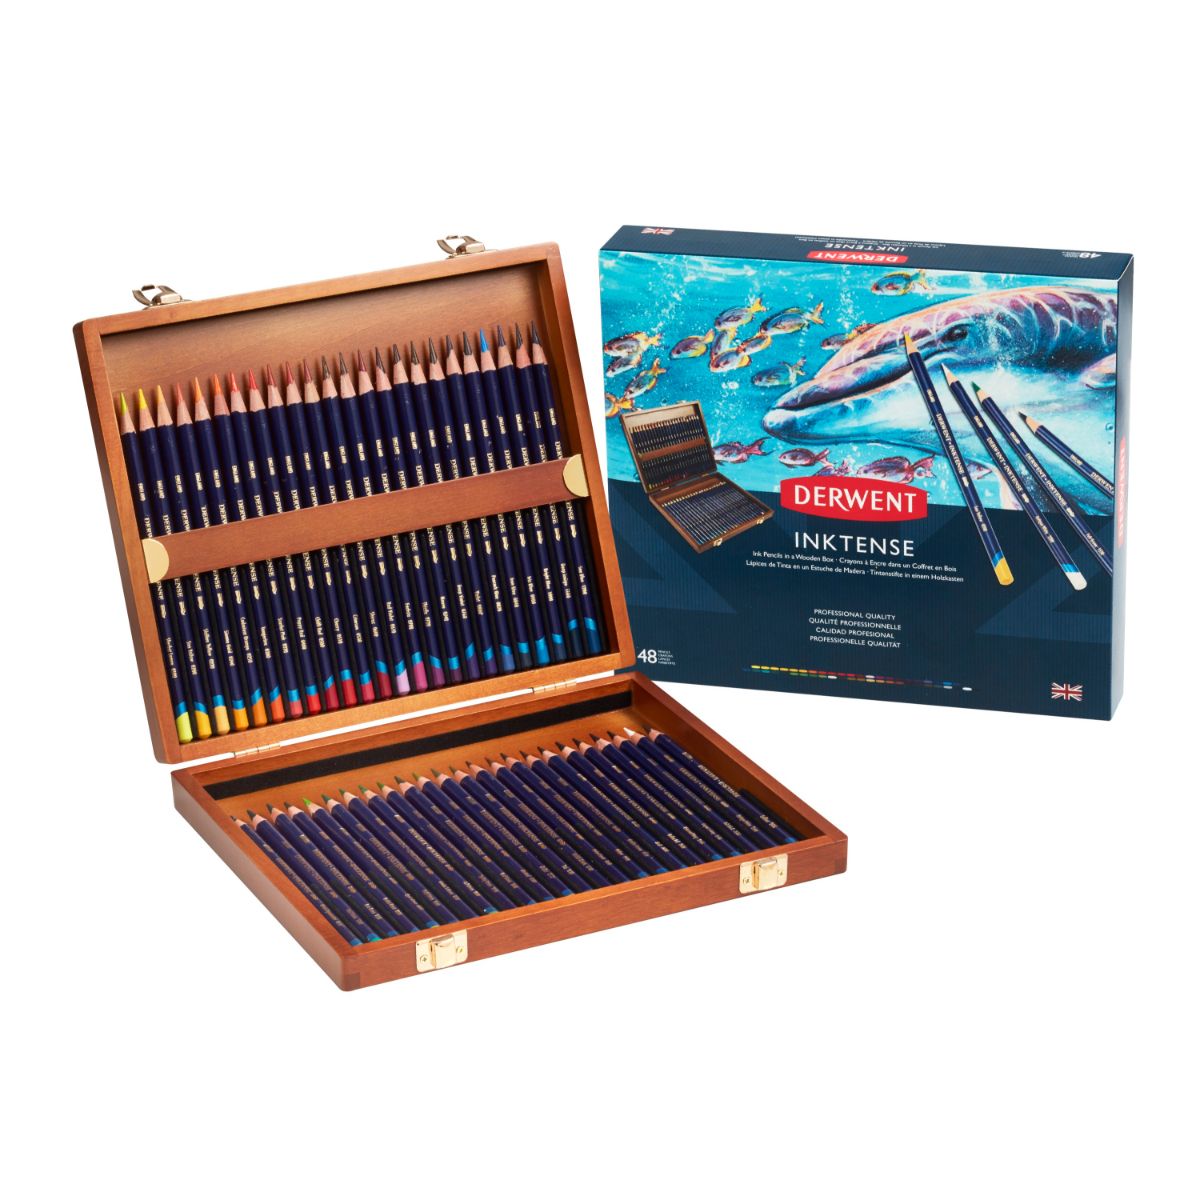 ダーウェント インクテンスペンシル ウッドボックス 48色 文具 高級色鉛筆 布ペン イギリス製